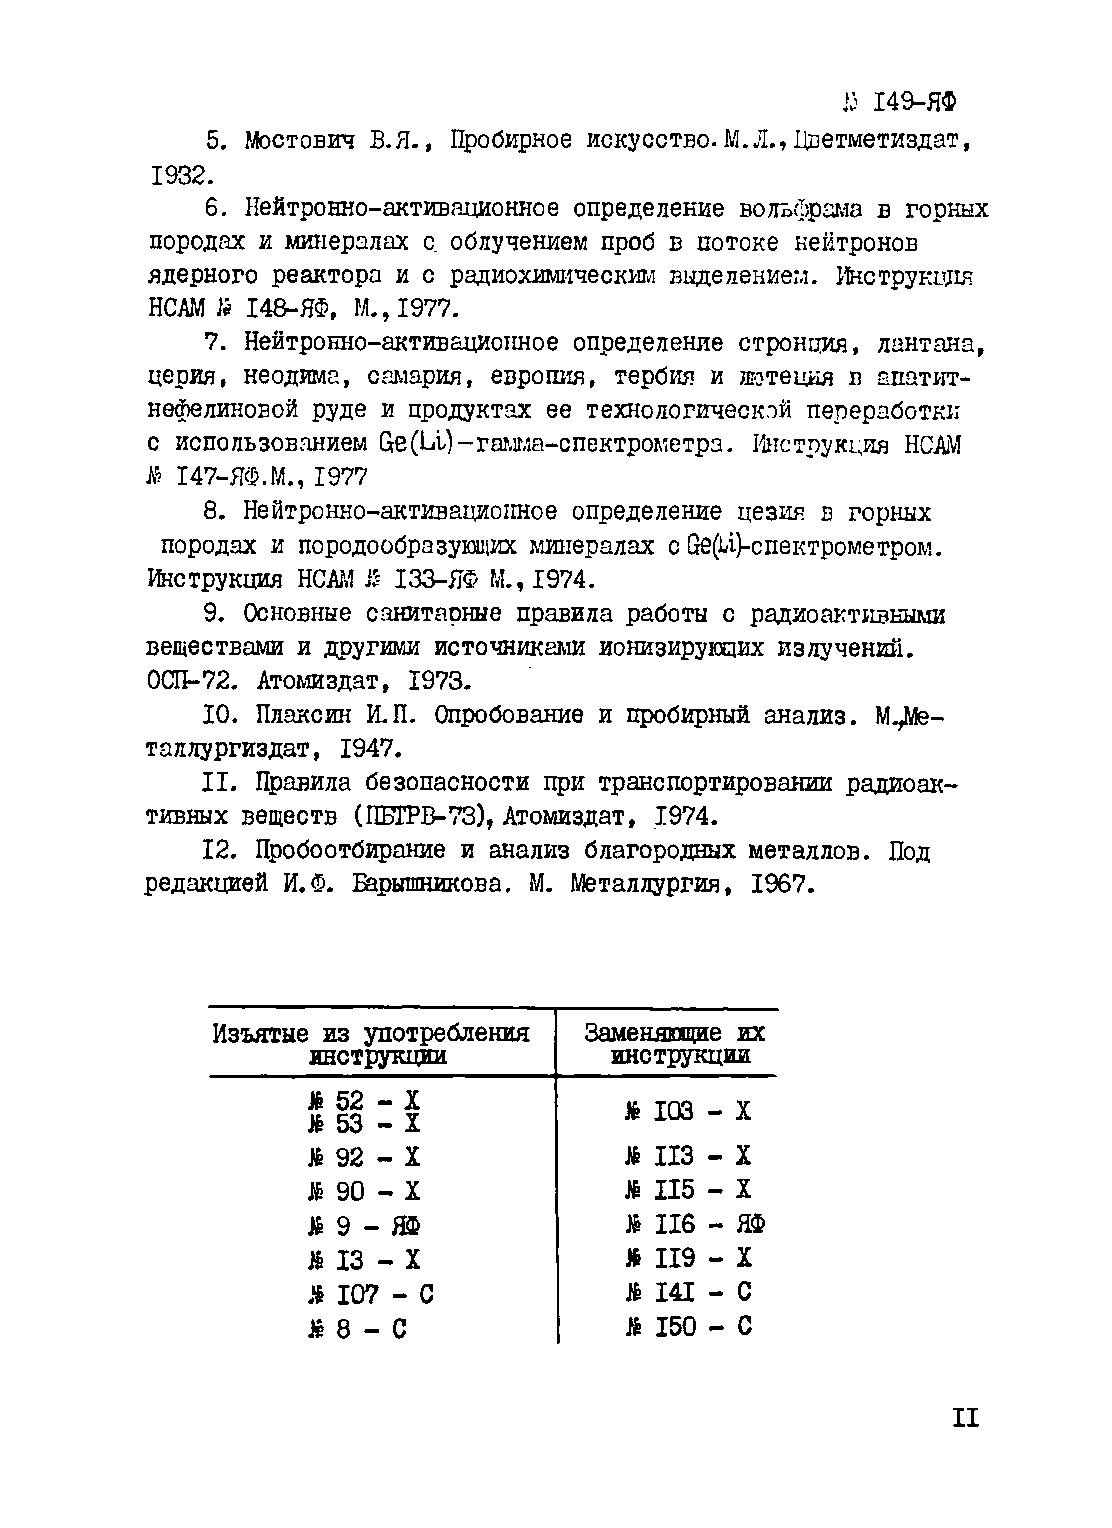 Инструкция НСАМ 149-ЯФ